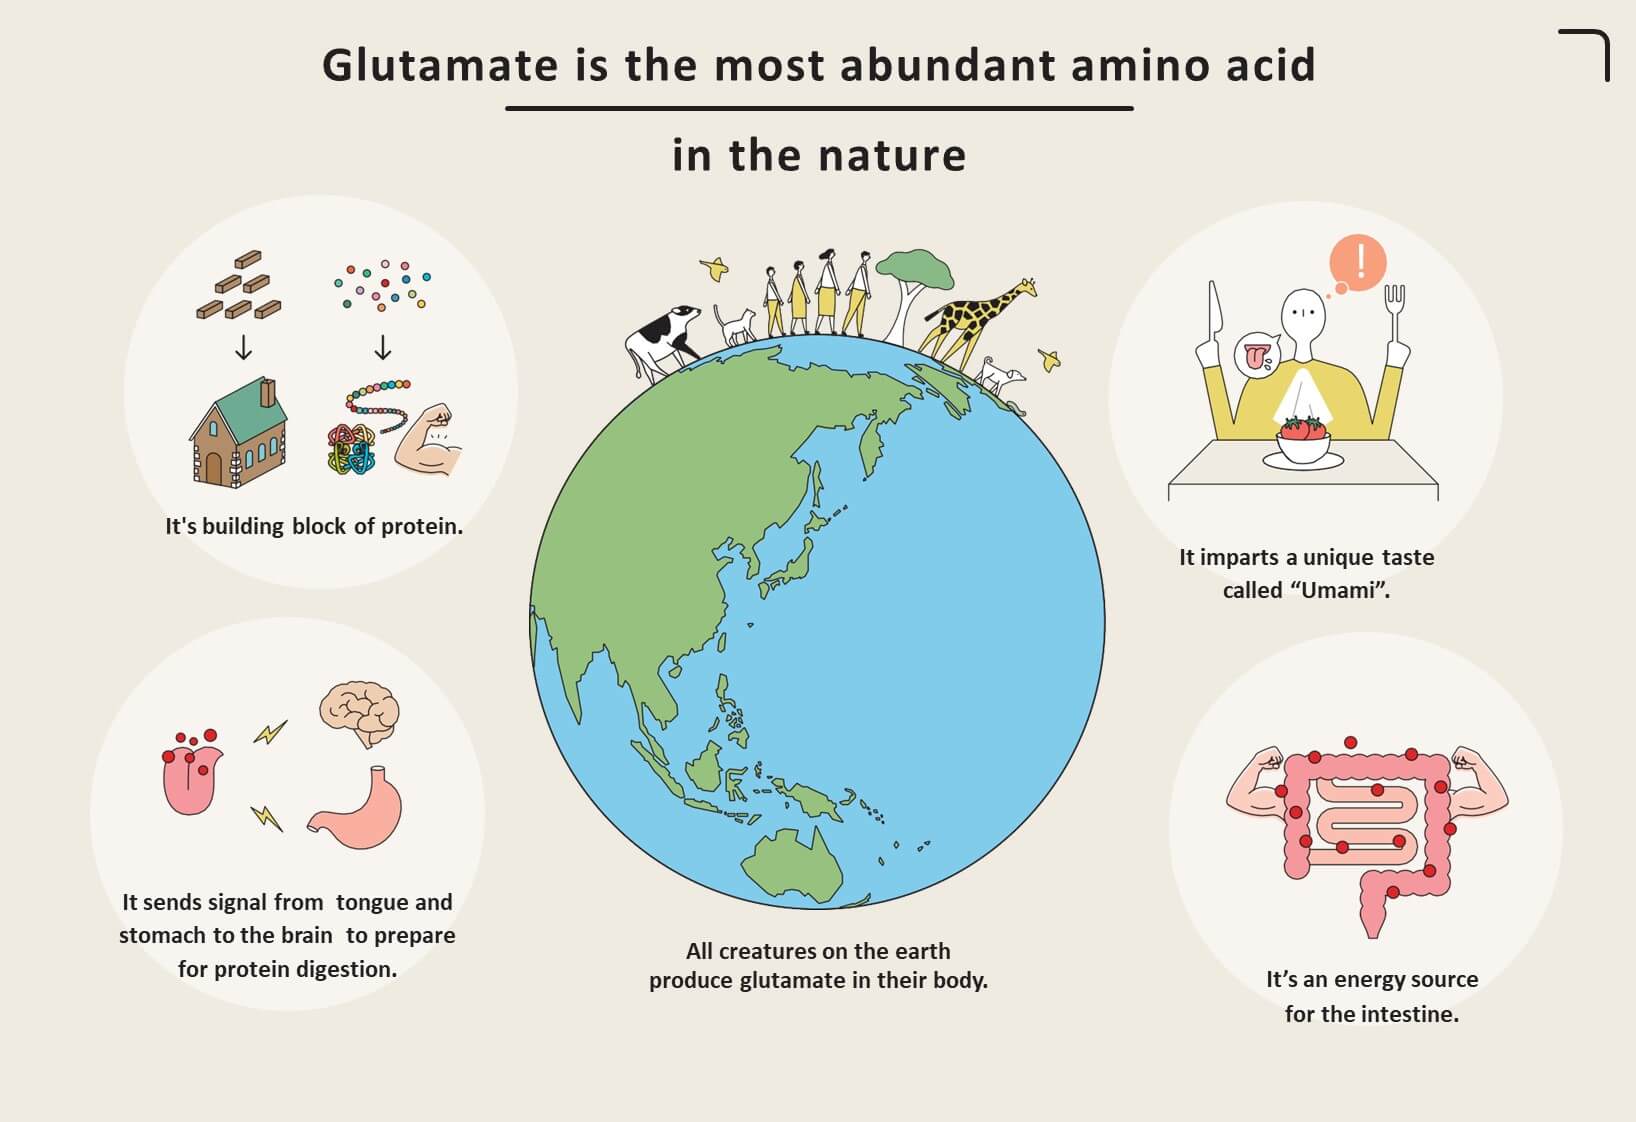 El glutamato es el aminoácido más abundante en la naturaleza.